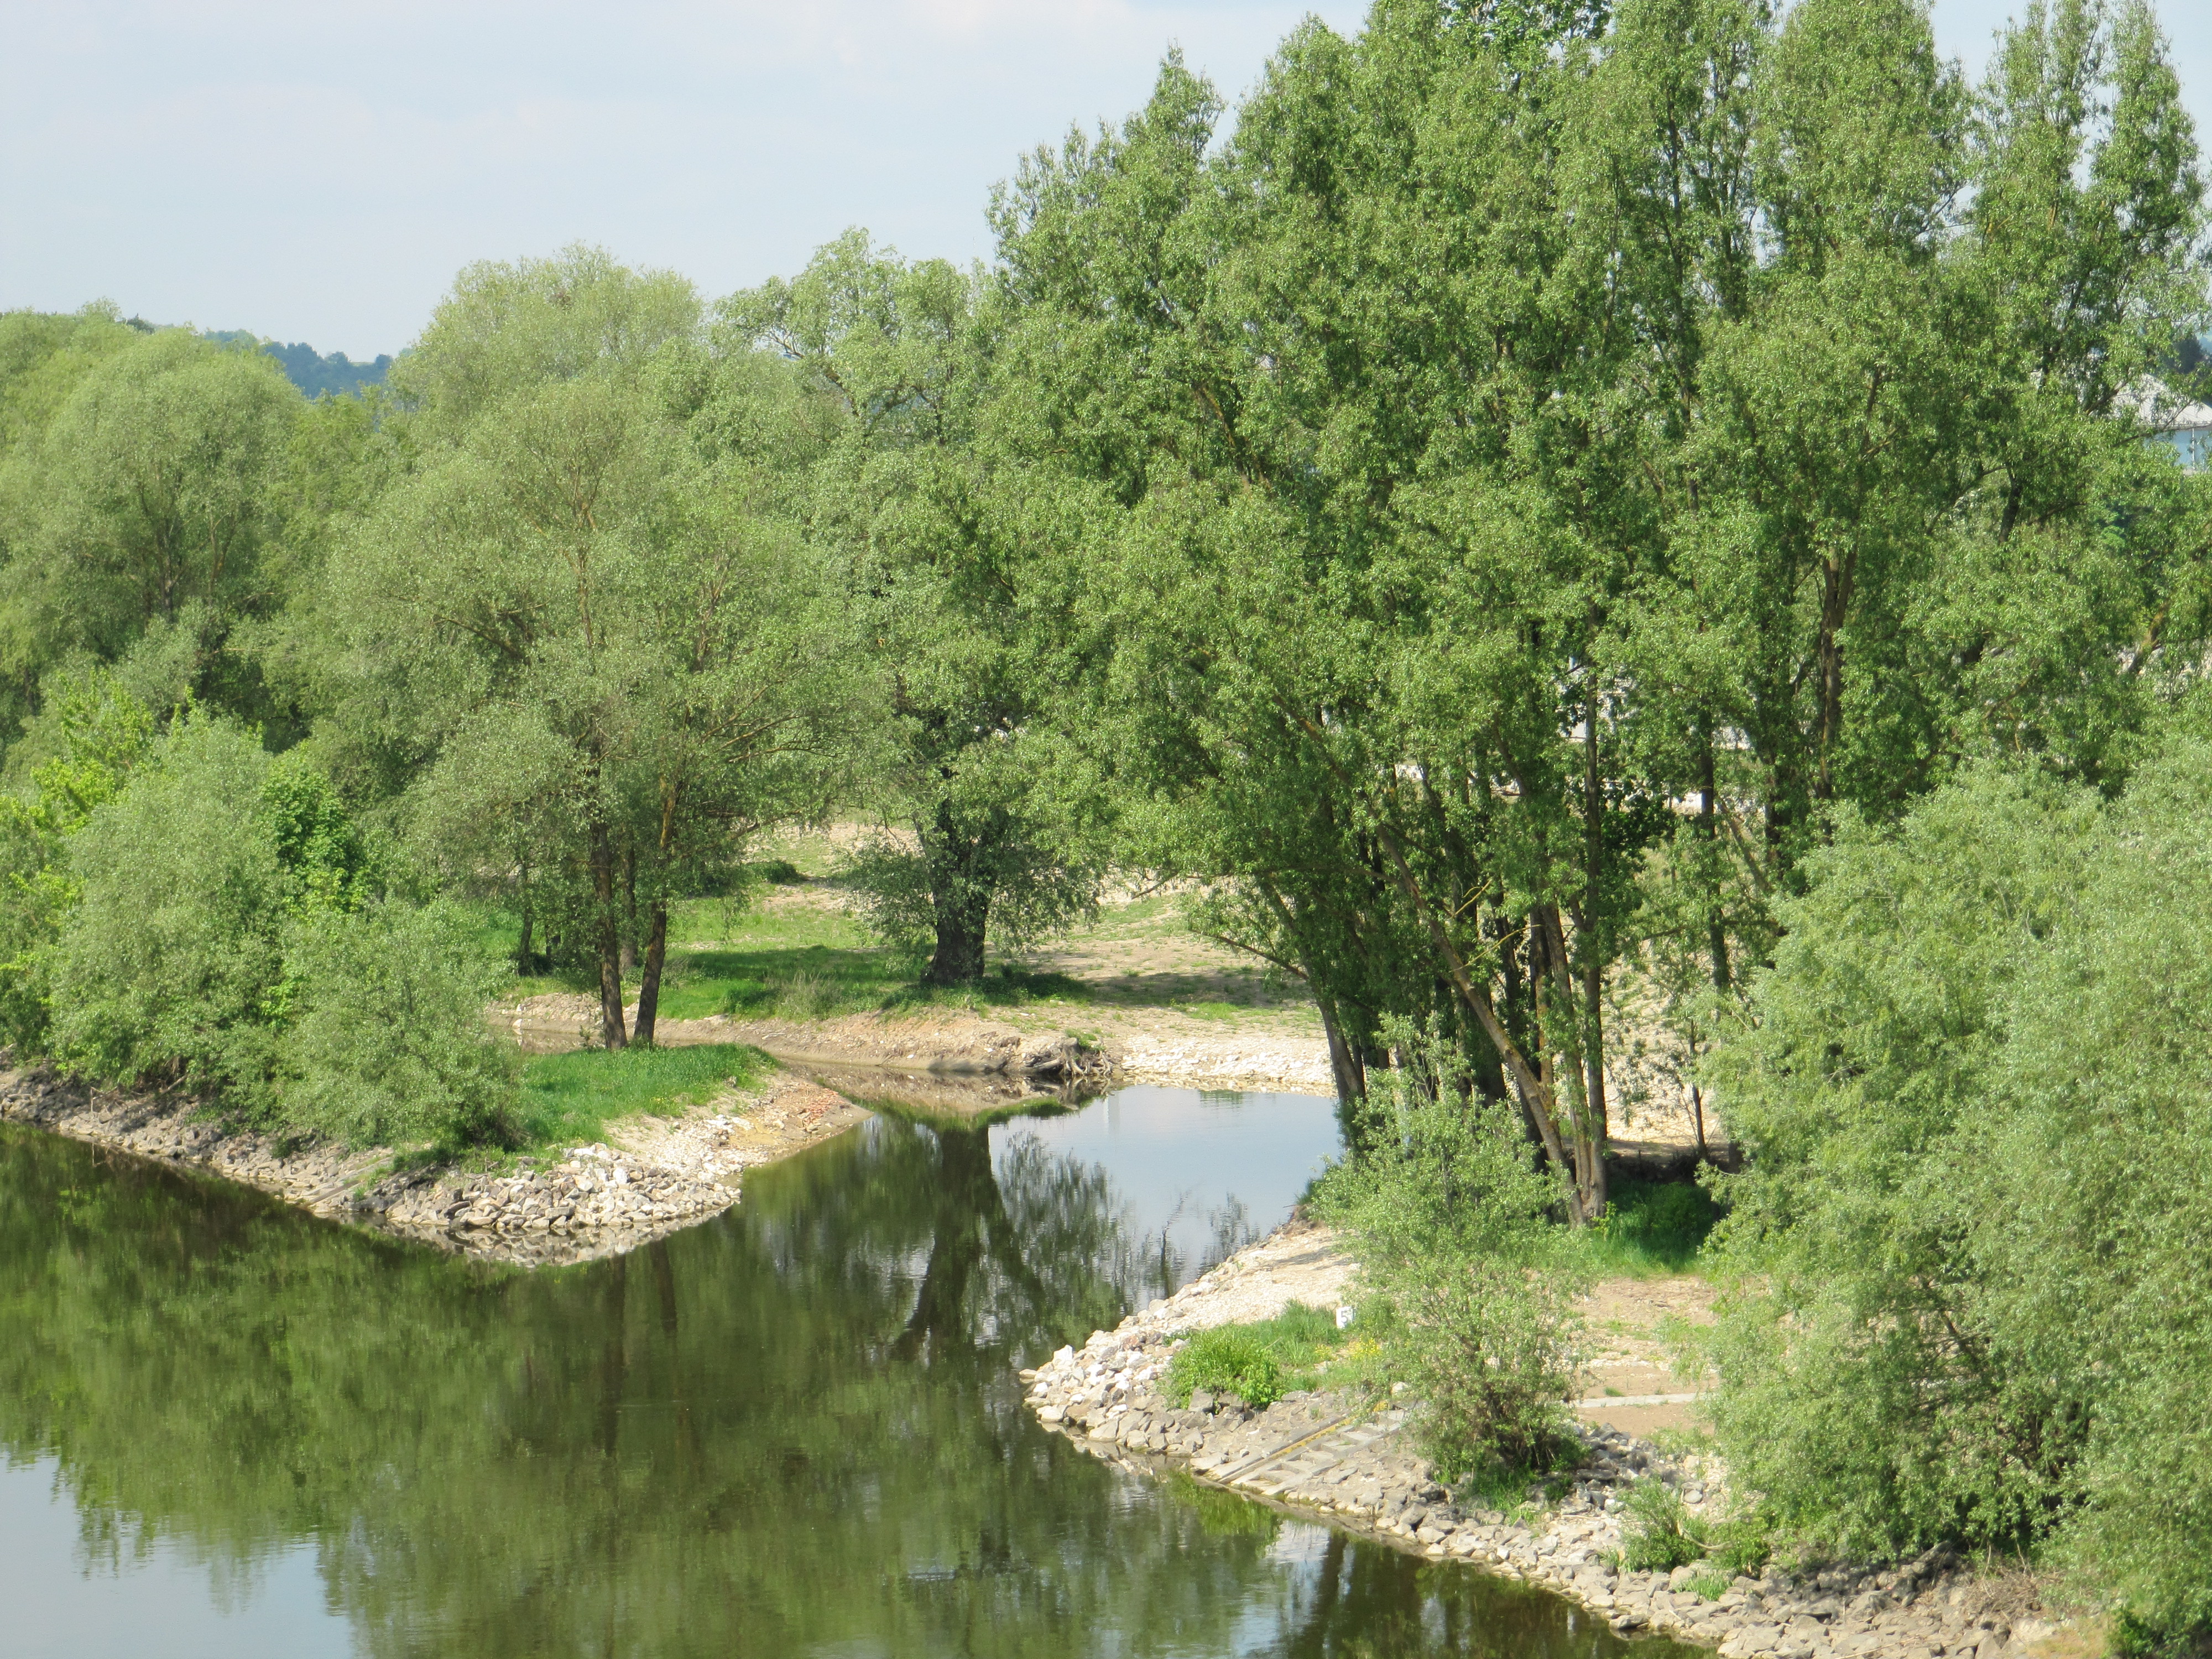 In der Mitte des Bildes der Einlauf in den Donaunebenarm mit beidseitigem Uferbewuchs und grünen Bäumen, dahinter links der weitere Verlauf des Nebenarmes und das Ufer